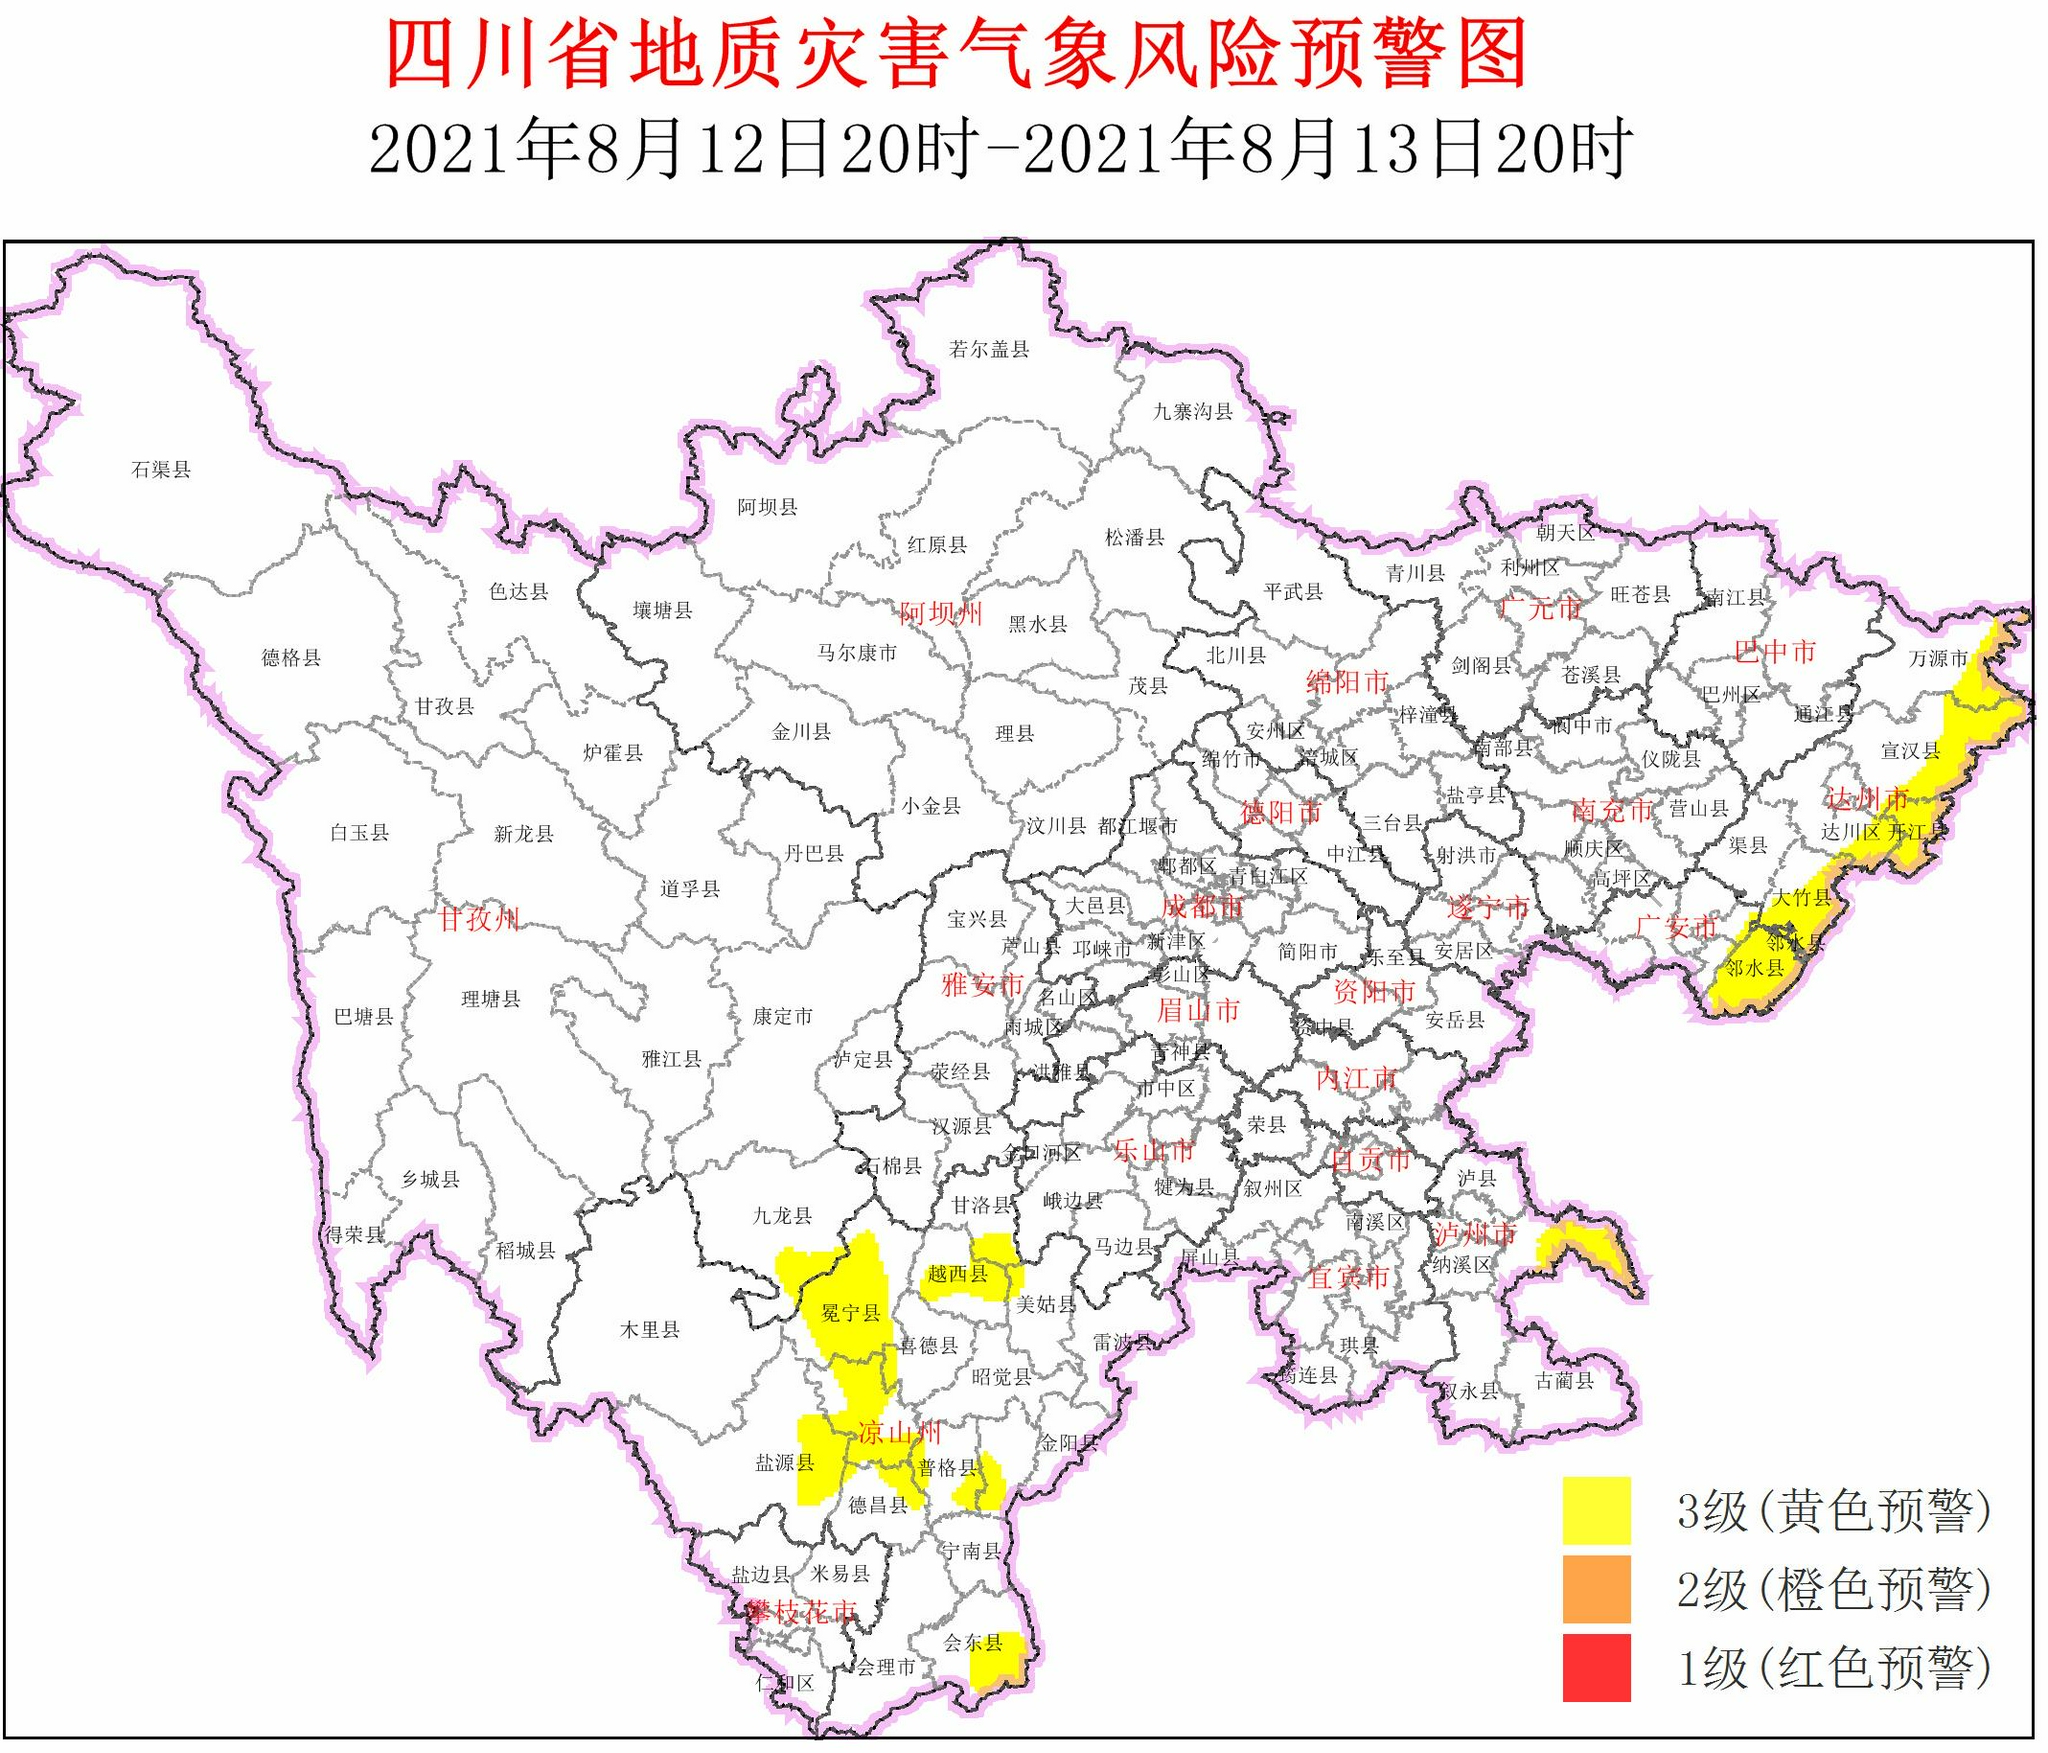 四川发布地质灾害气象风险3级黄色预警 涉及21个县市区